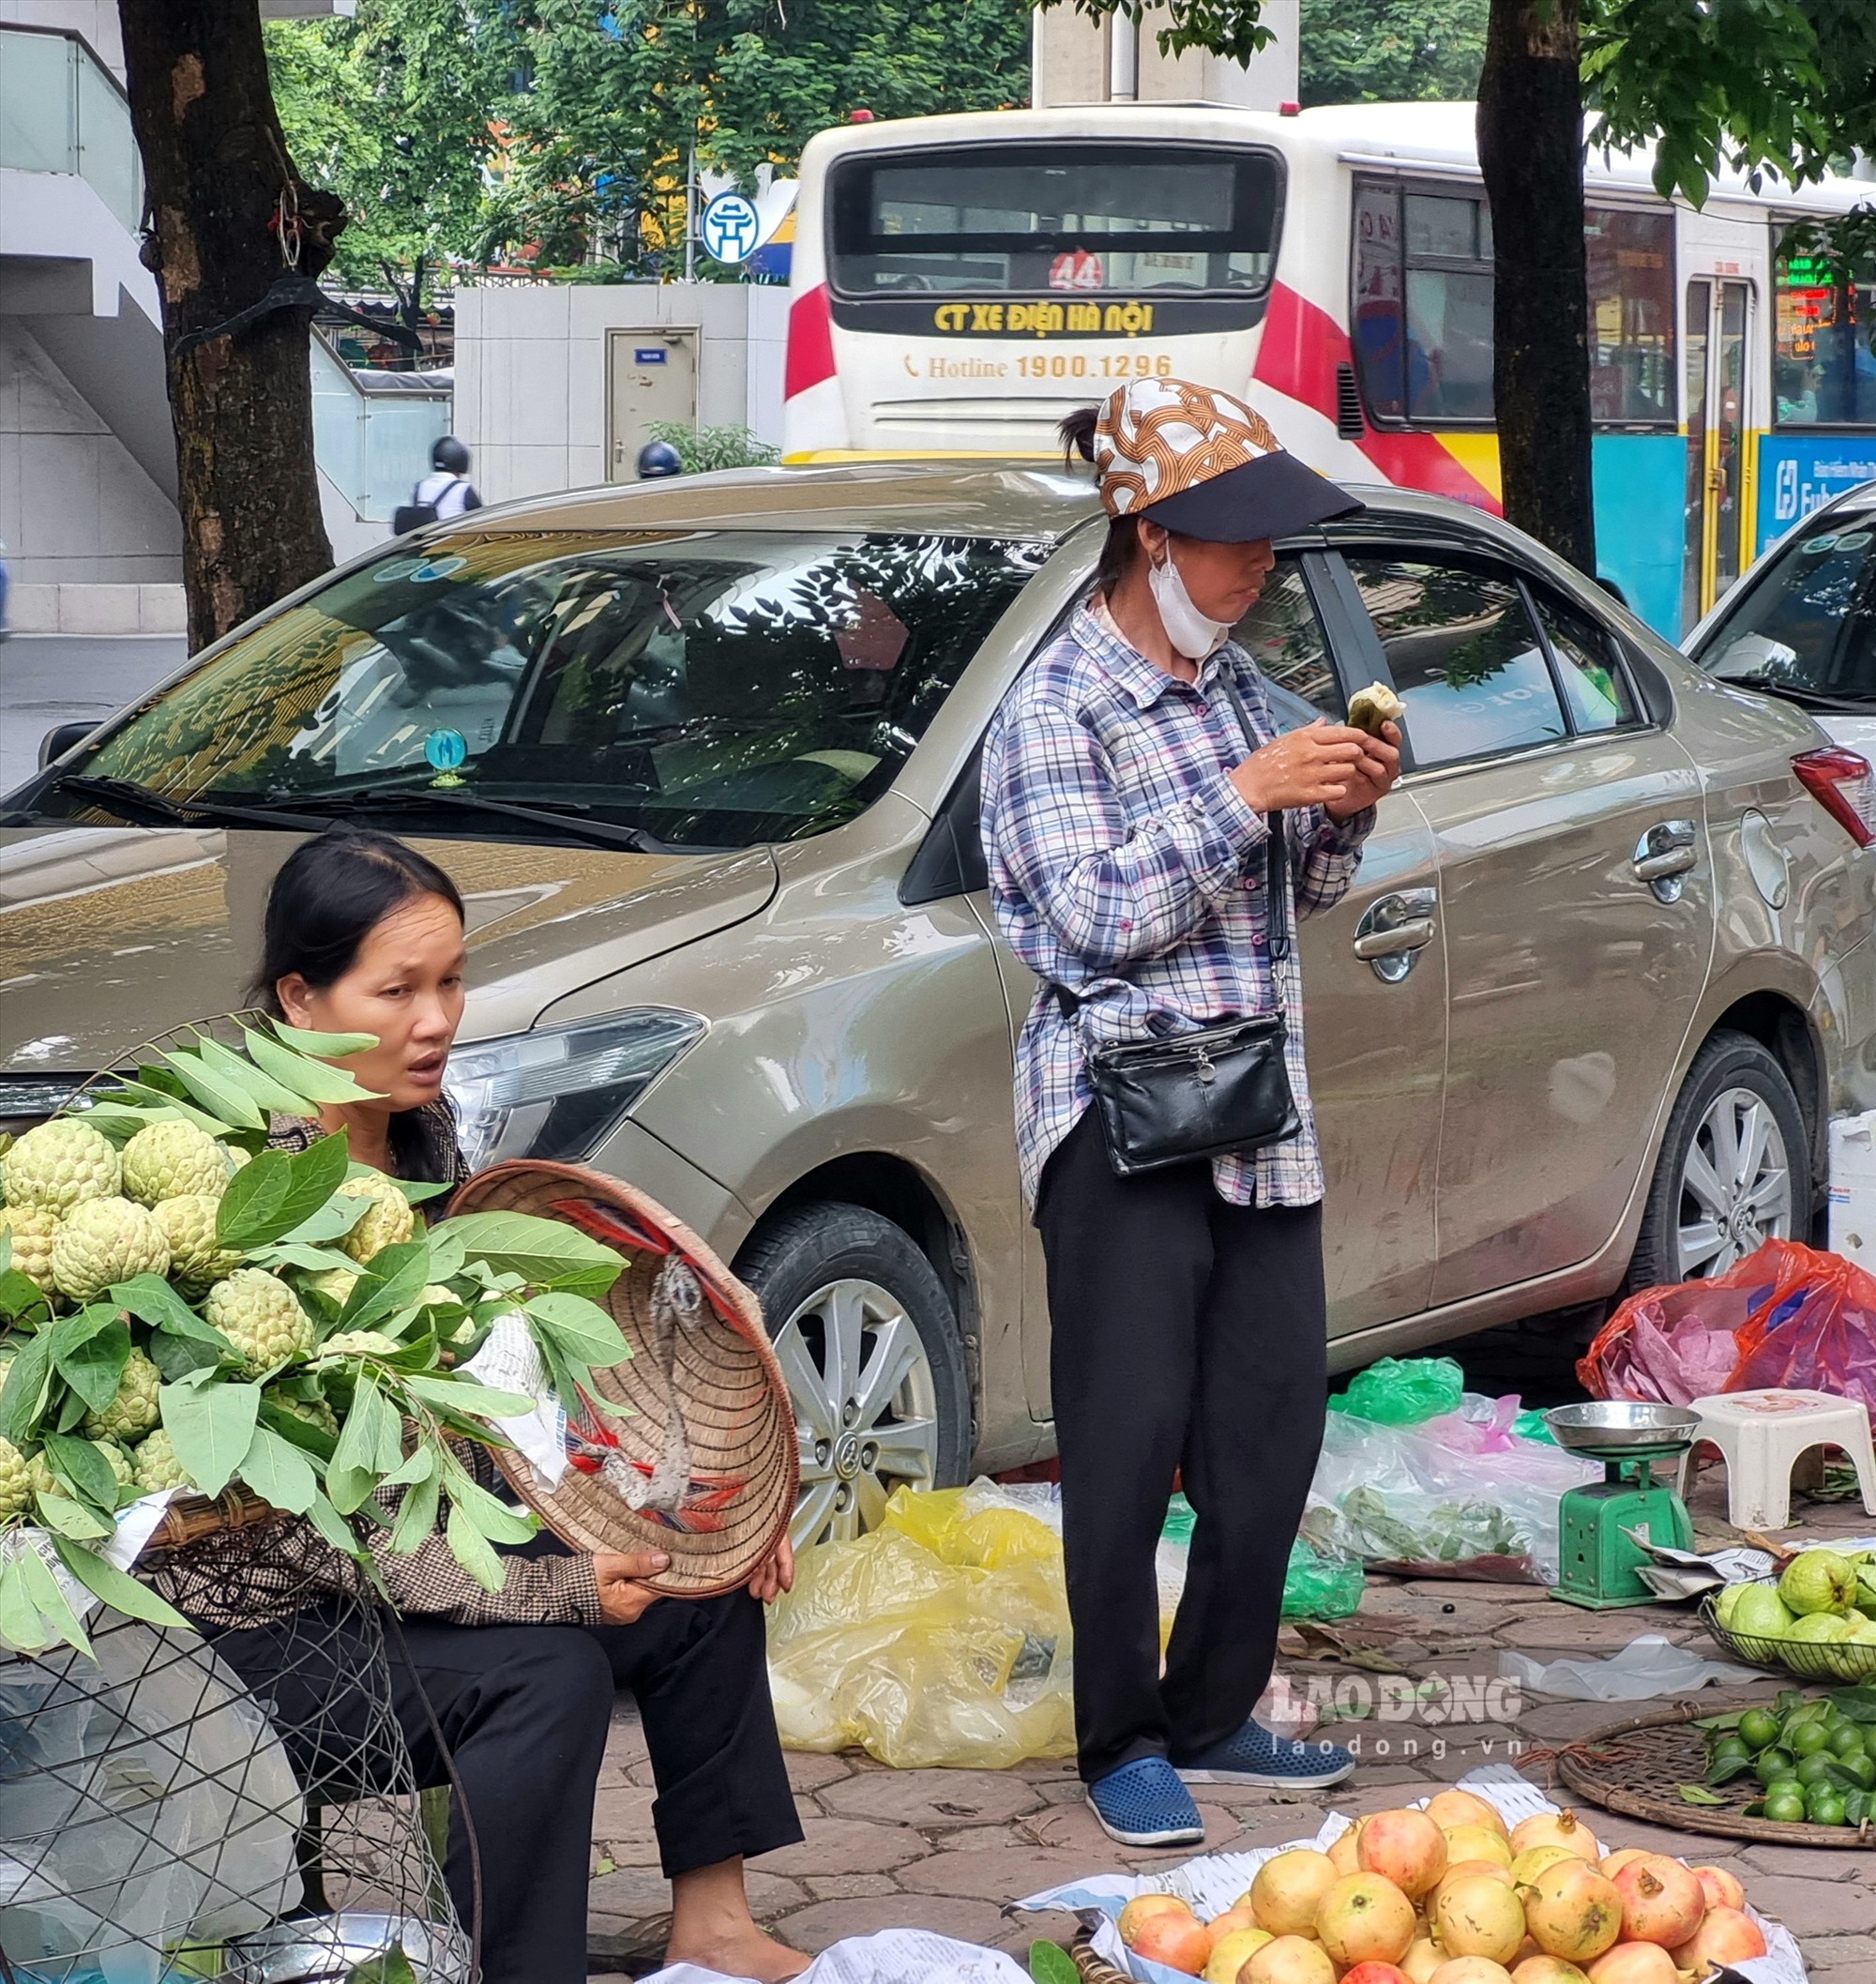 Bán hoa quả tại chợ Nhân Chính (Thanh Xuân - Hà Nội), chị Đỗ Thị Là tranh thủ không có khách ăn vội chiếc bánh chưng.